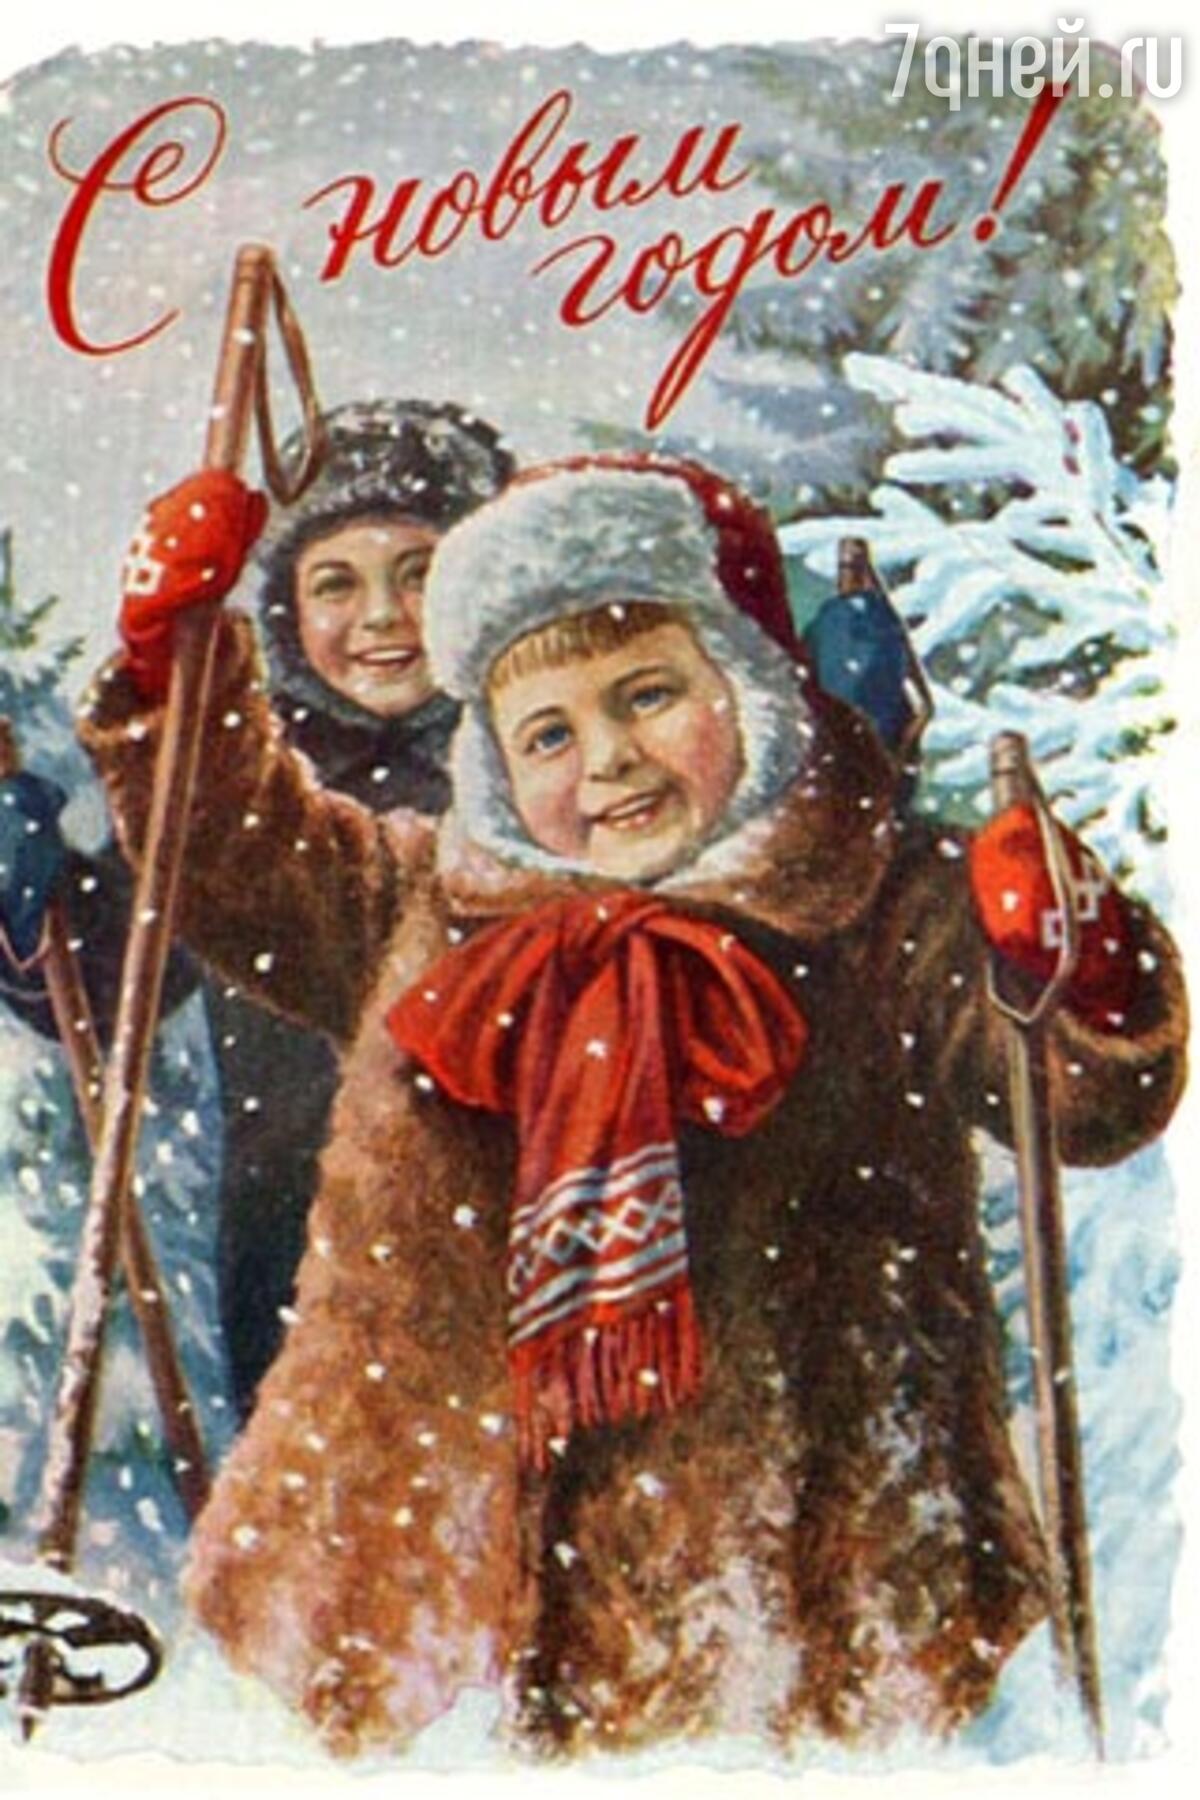 Как самостоятельно оценить открытки СССР